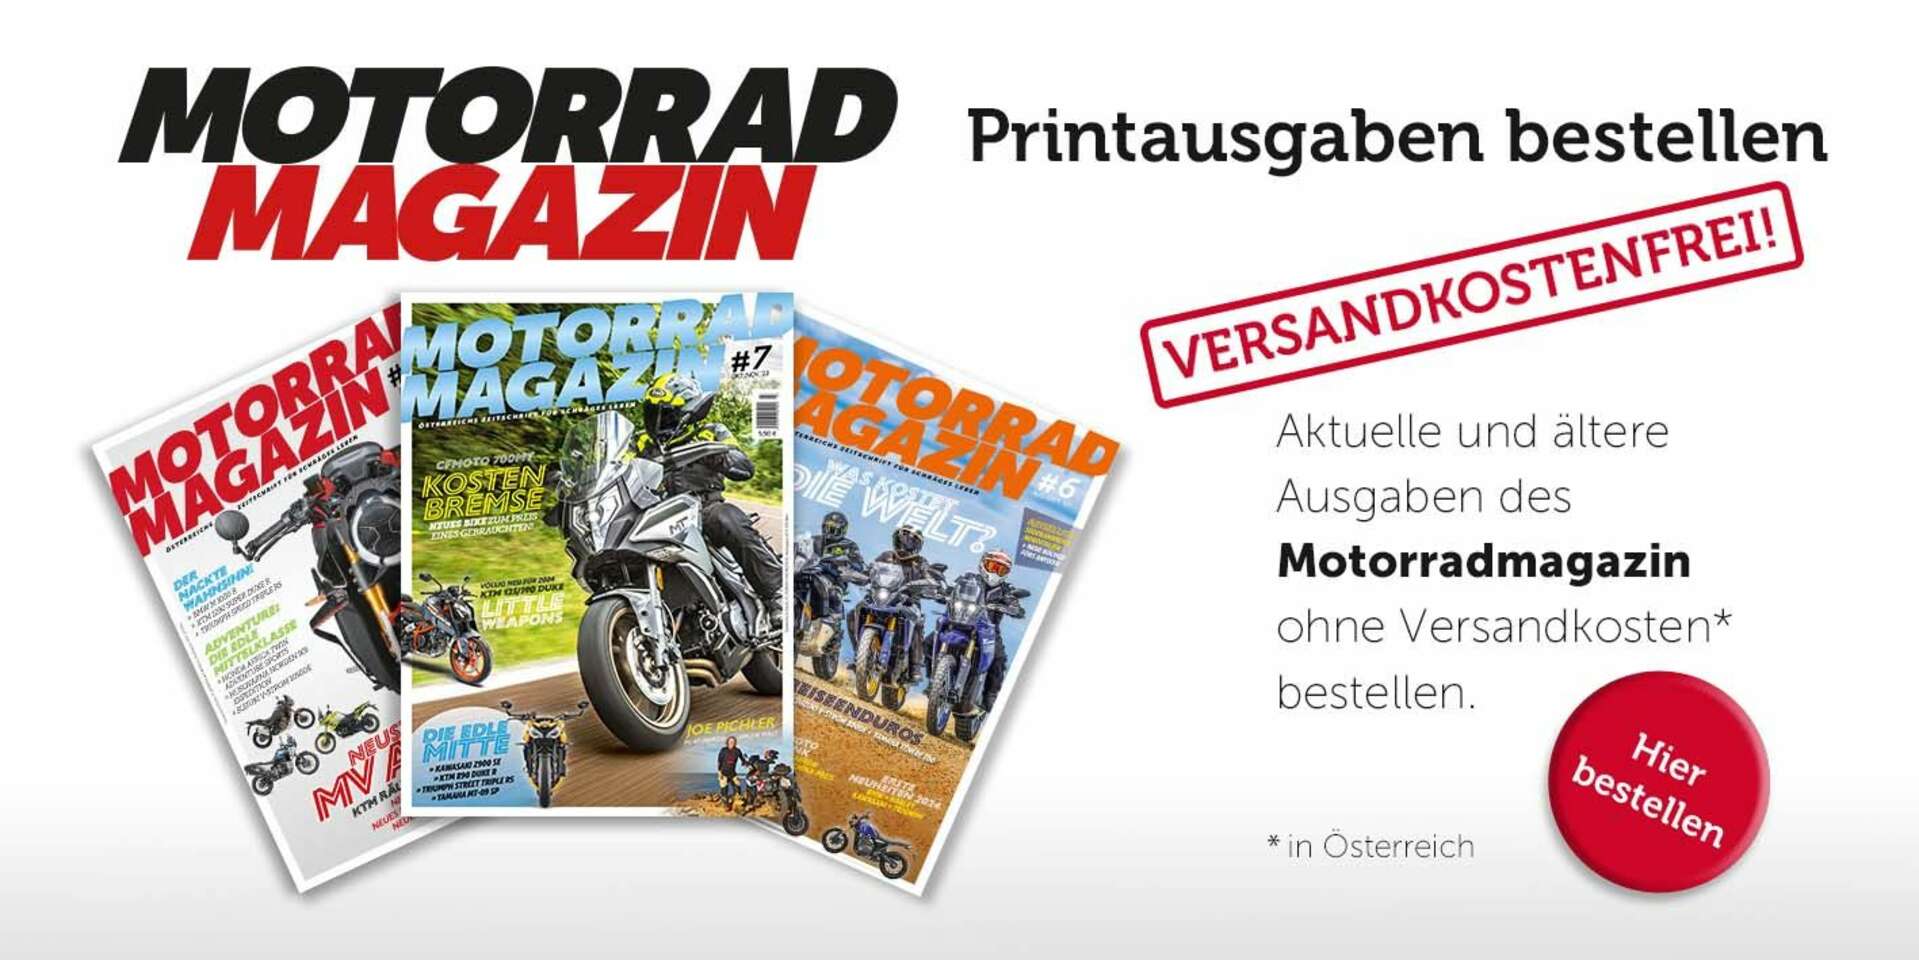 Motorrad-Magazin Printausgaben bestellen